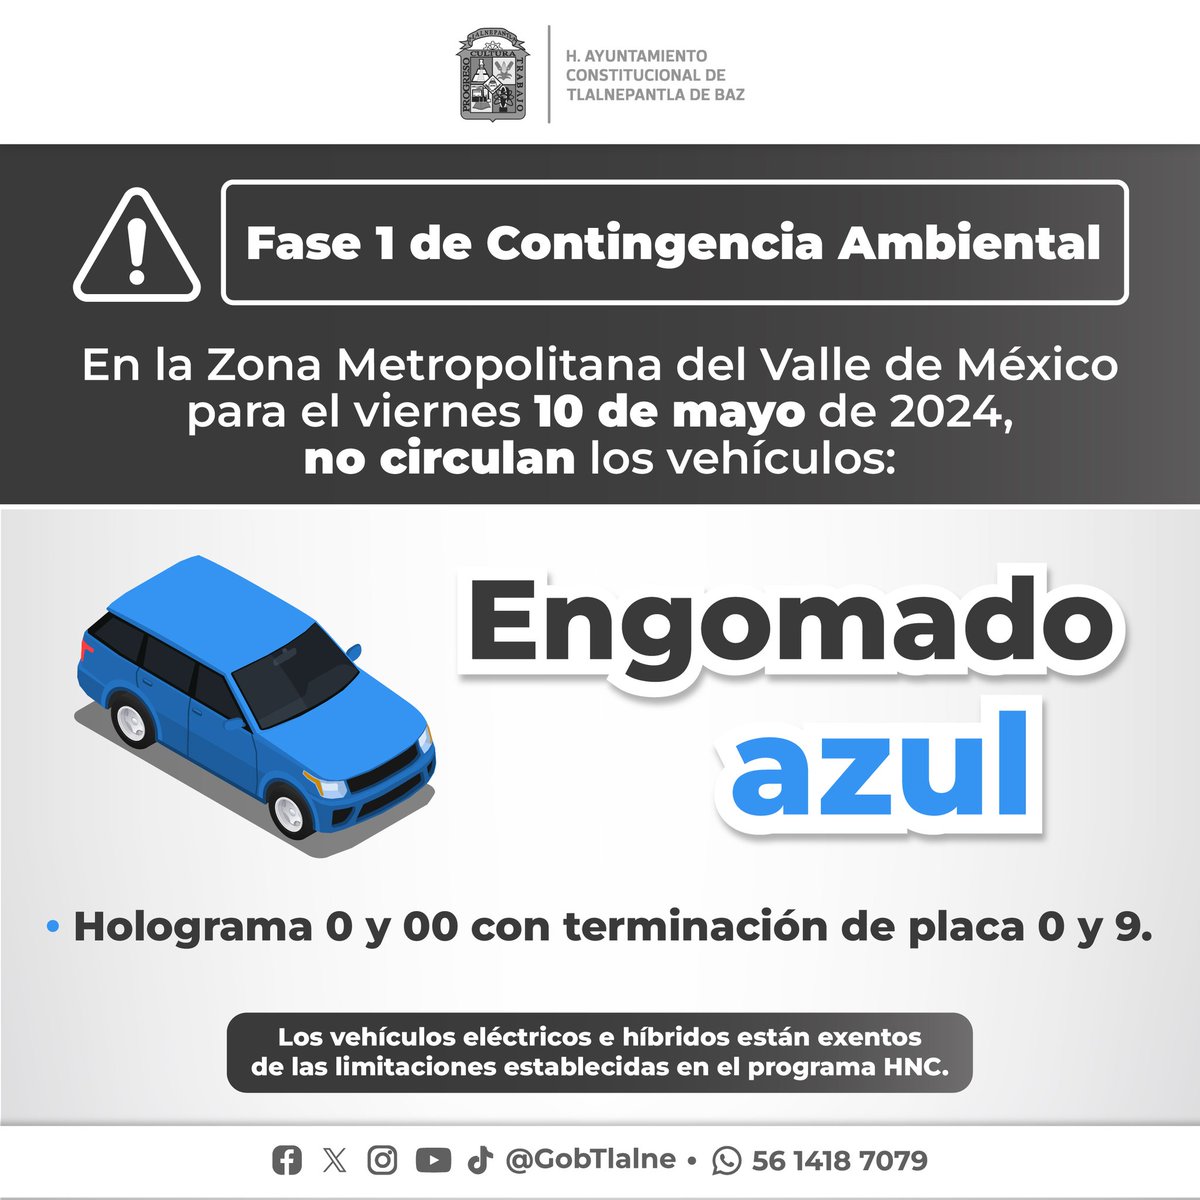 #IMPORTANTE Por altos indices de ozono en la #ZMVM, se activa programa #HoyNoCircula para vehículos con engomado azul🔵 hologramas 0 y 00 con terminación de placas 0 y 9. Toma tus precauciones.